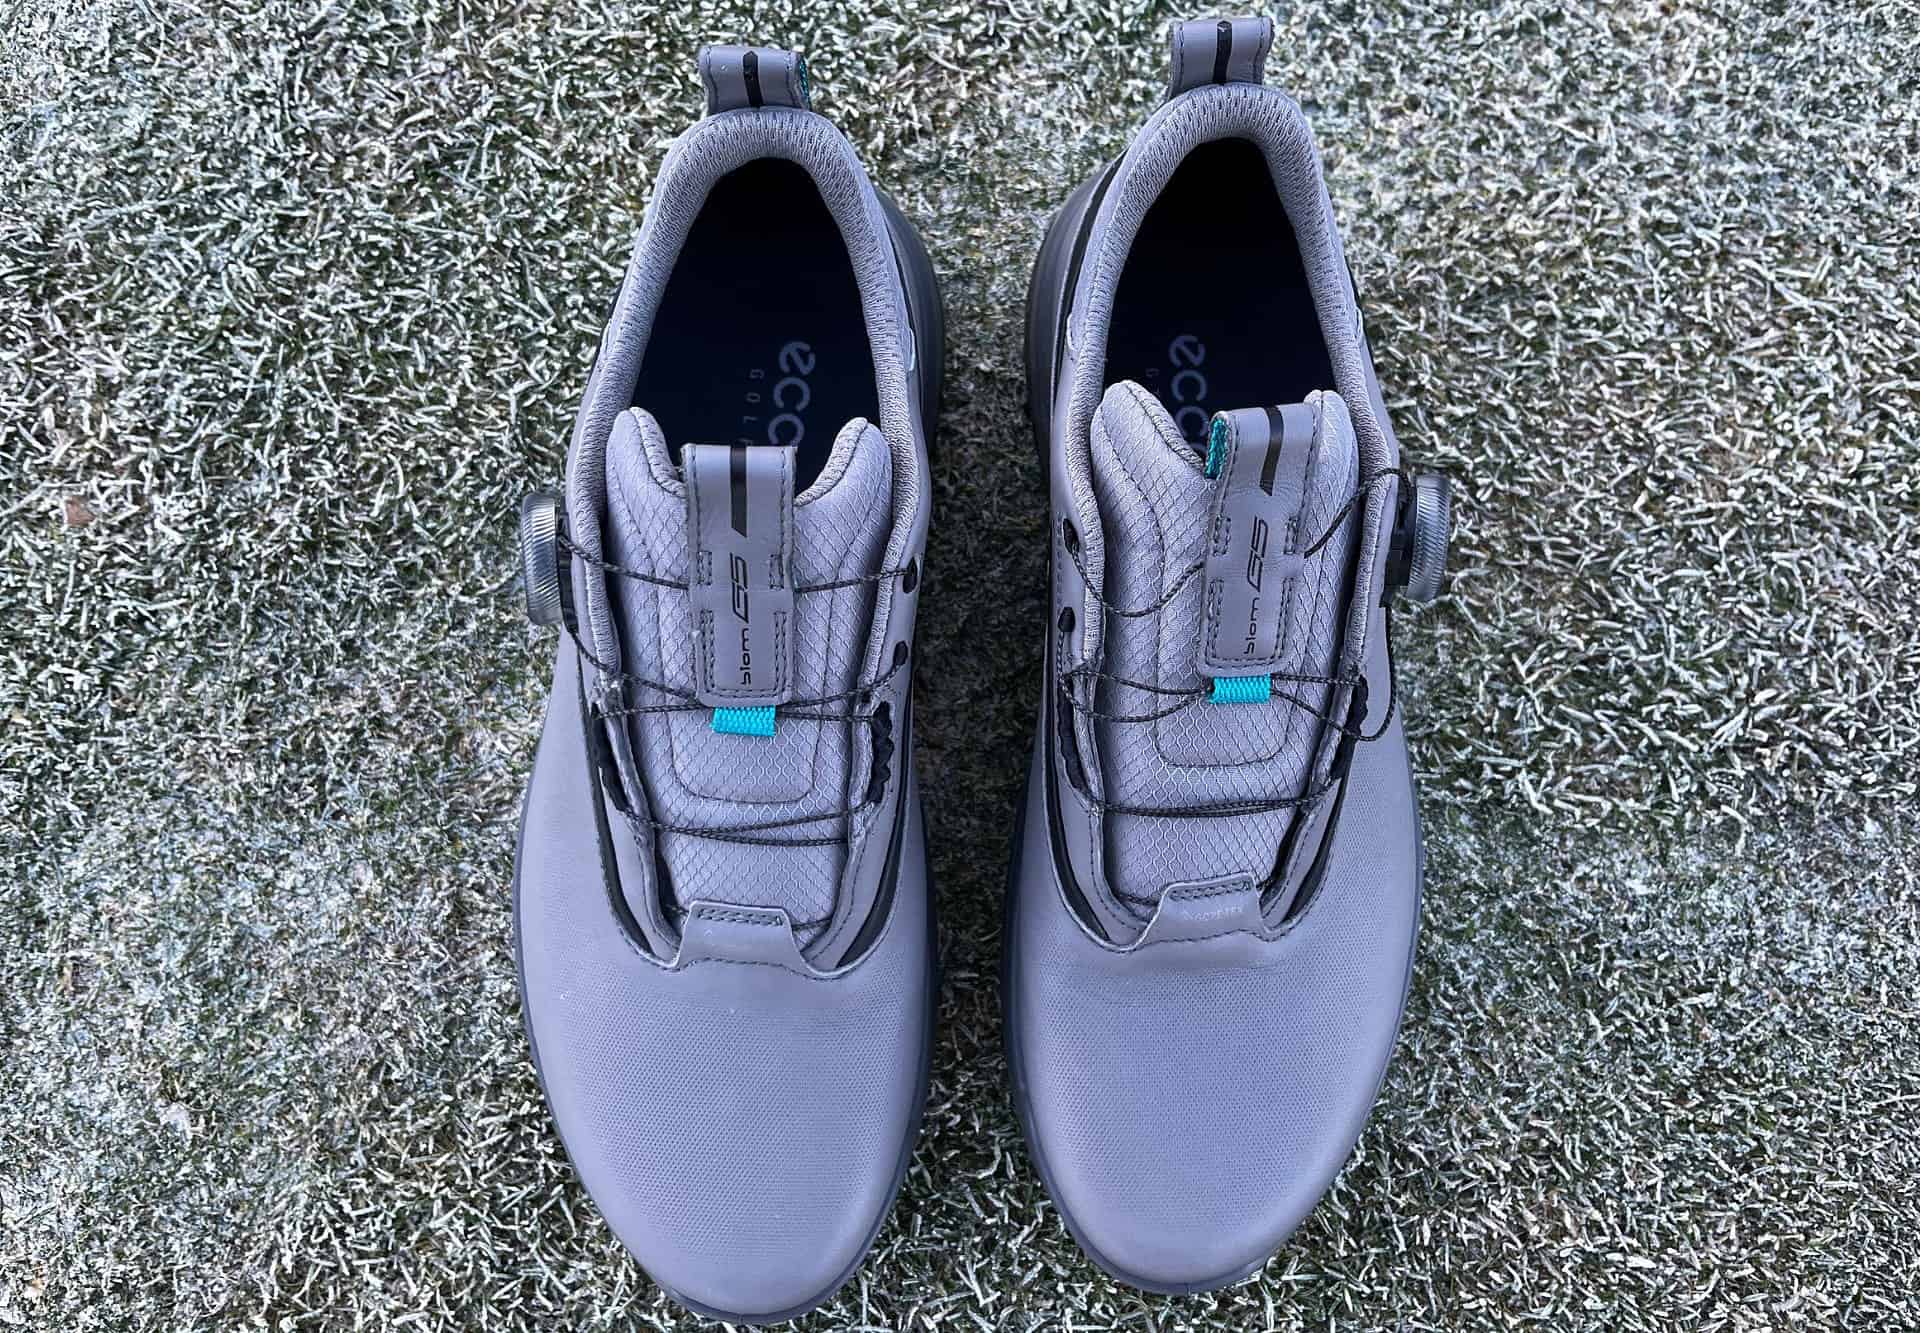 Ecco M Golf Biom G5 golf shoes review